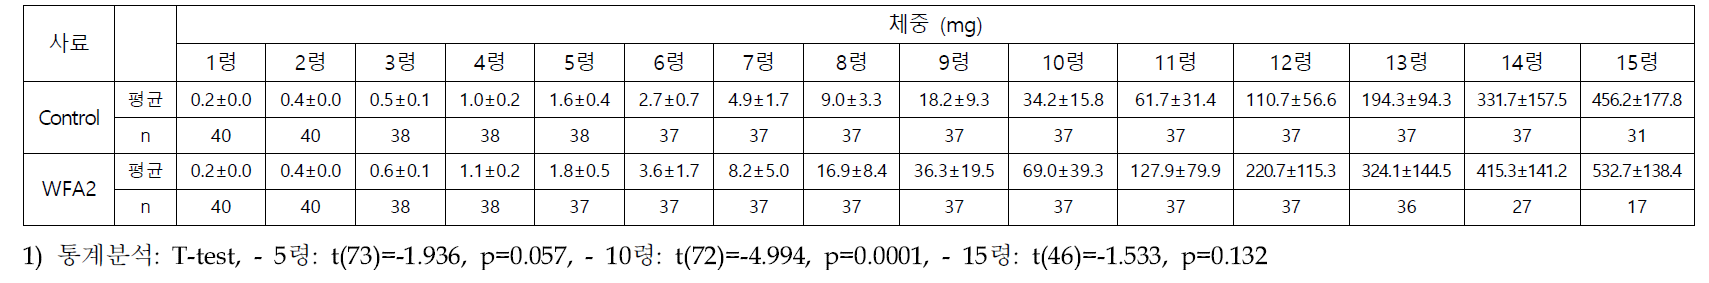 선발된 인공사료(WFA2)와 밀기울에 따른 아메리카왕거저리 유충의 령별 체중(mg)